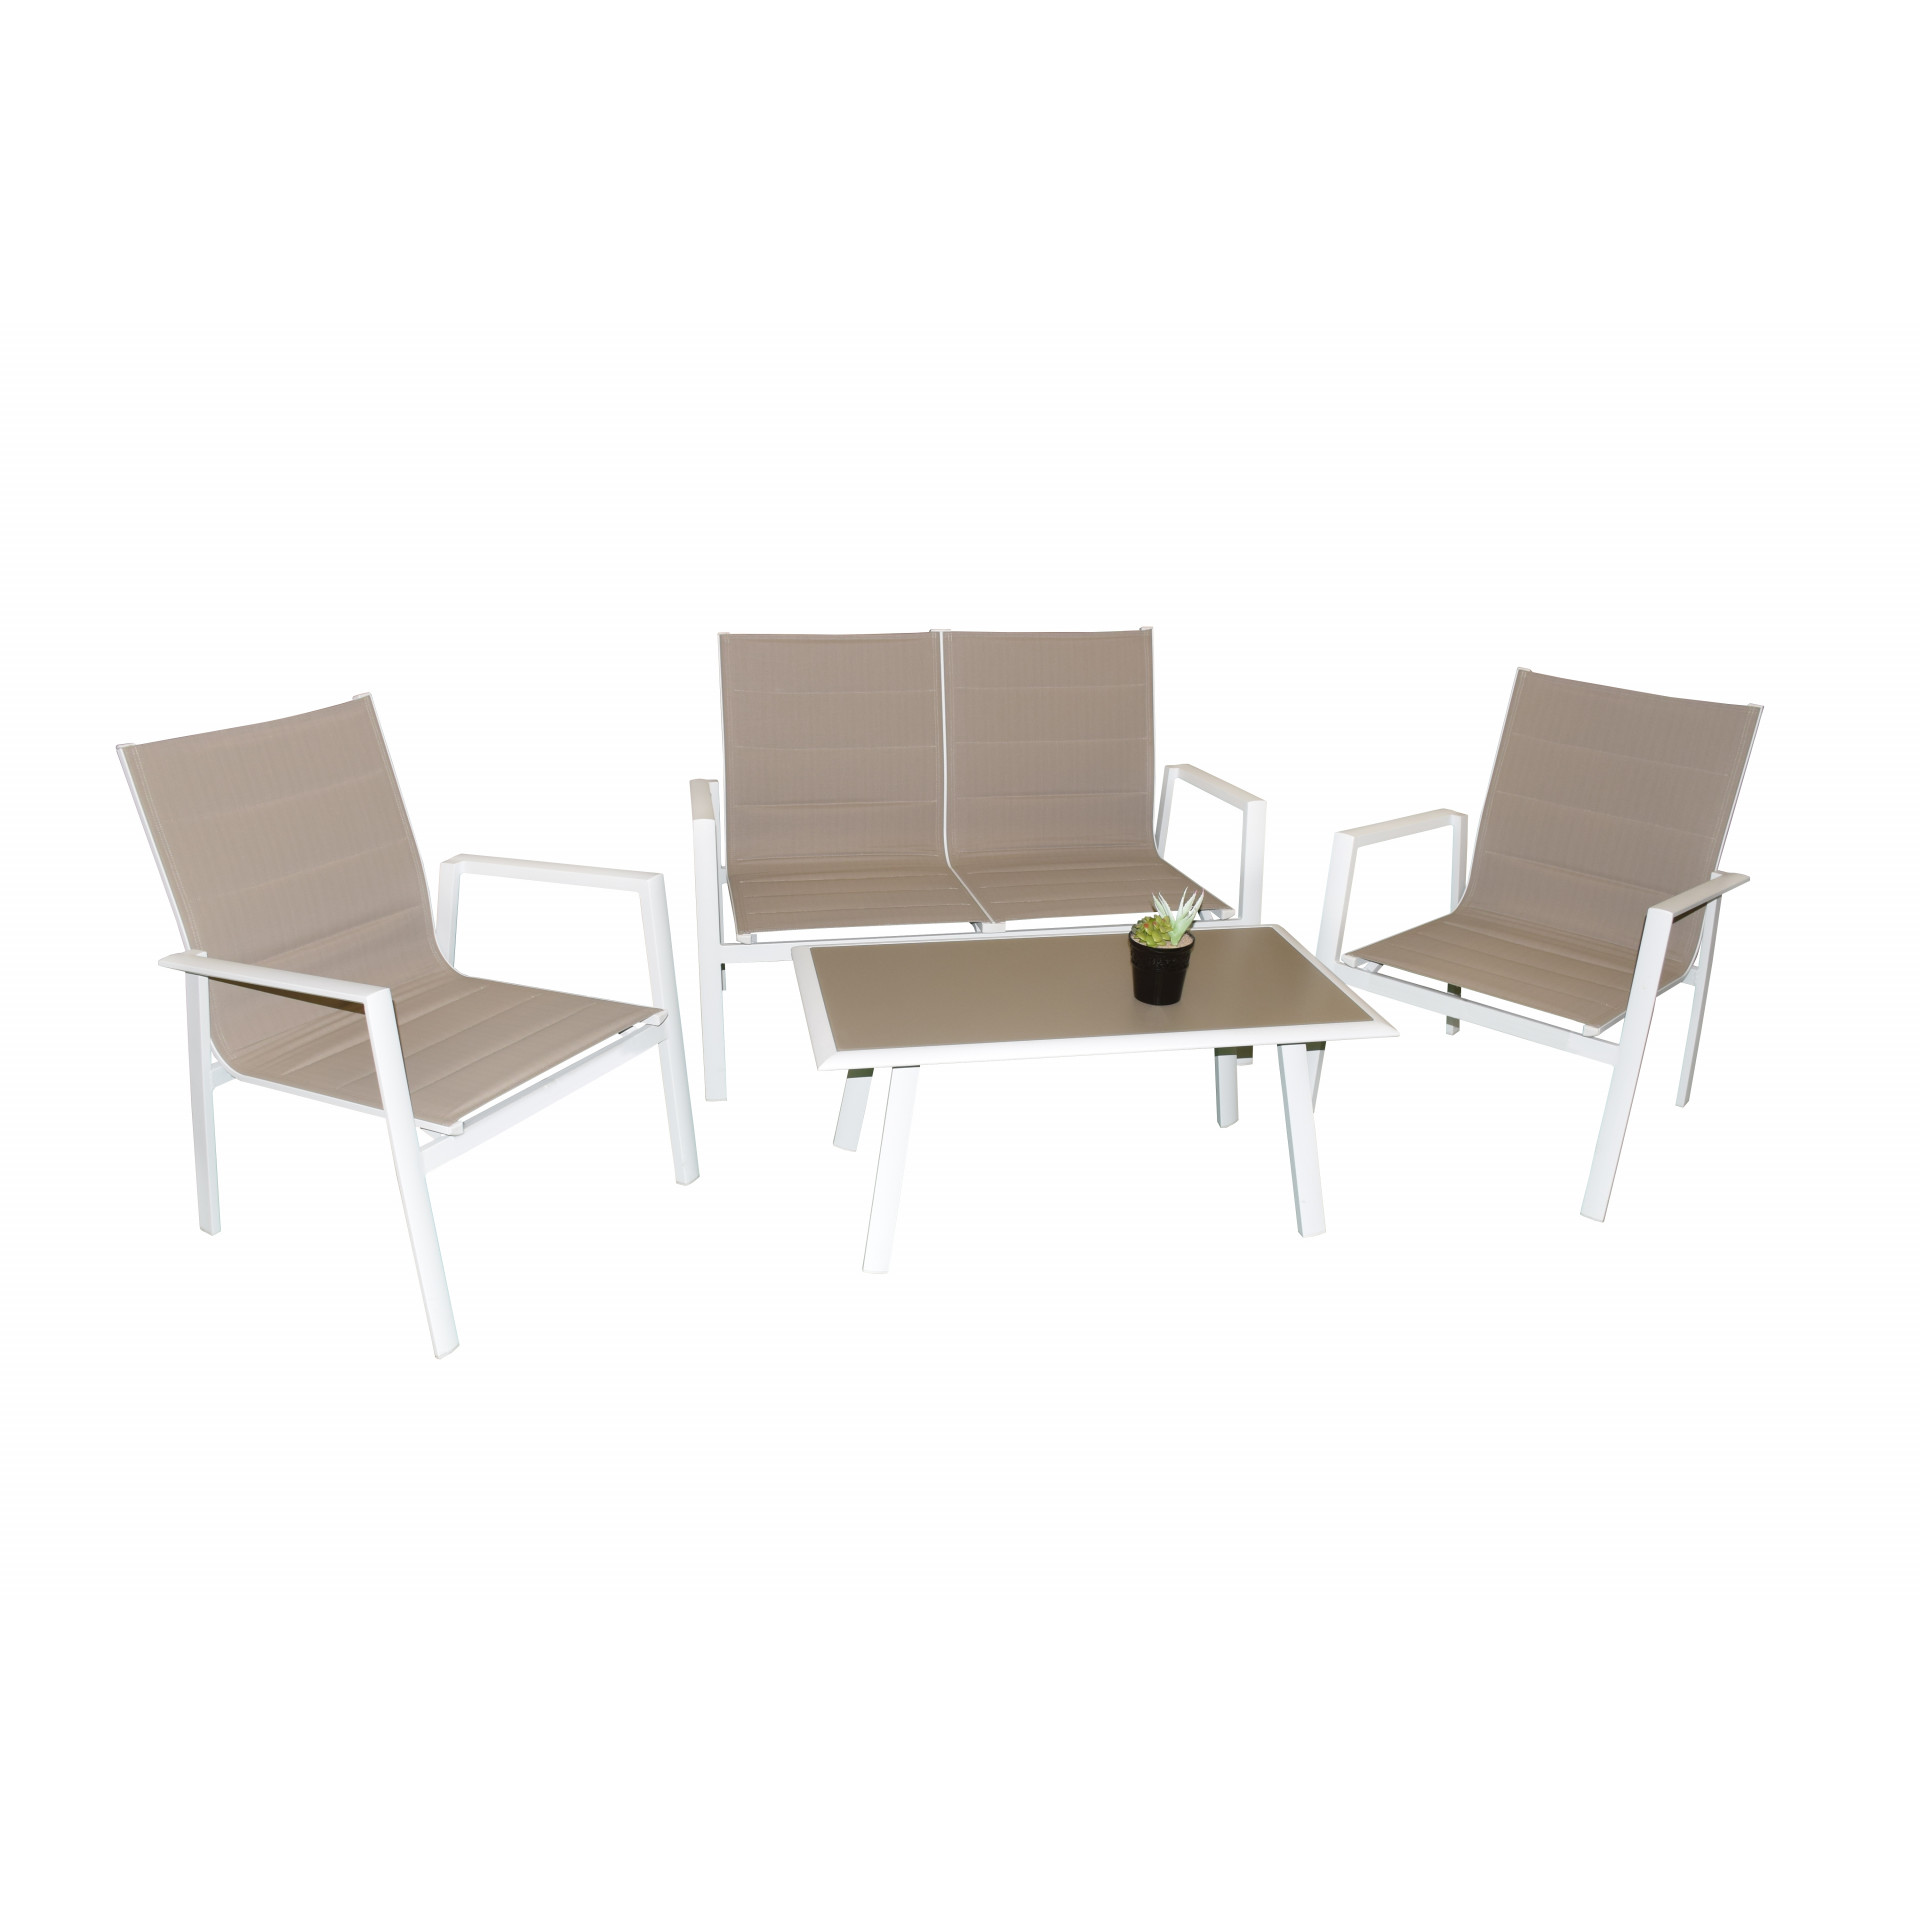 Salotto da giardino Almissa con sedie divano e tavolo basso bianco tortora